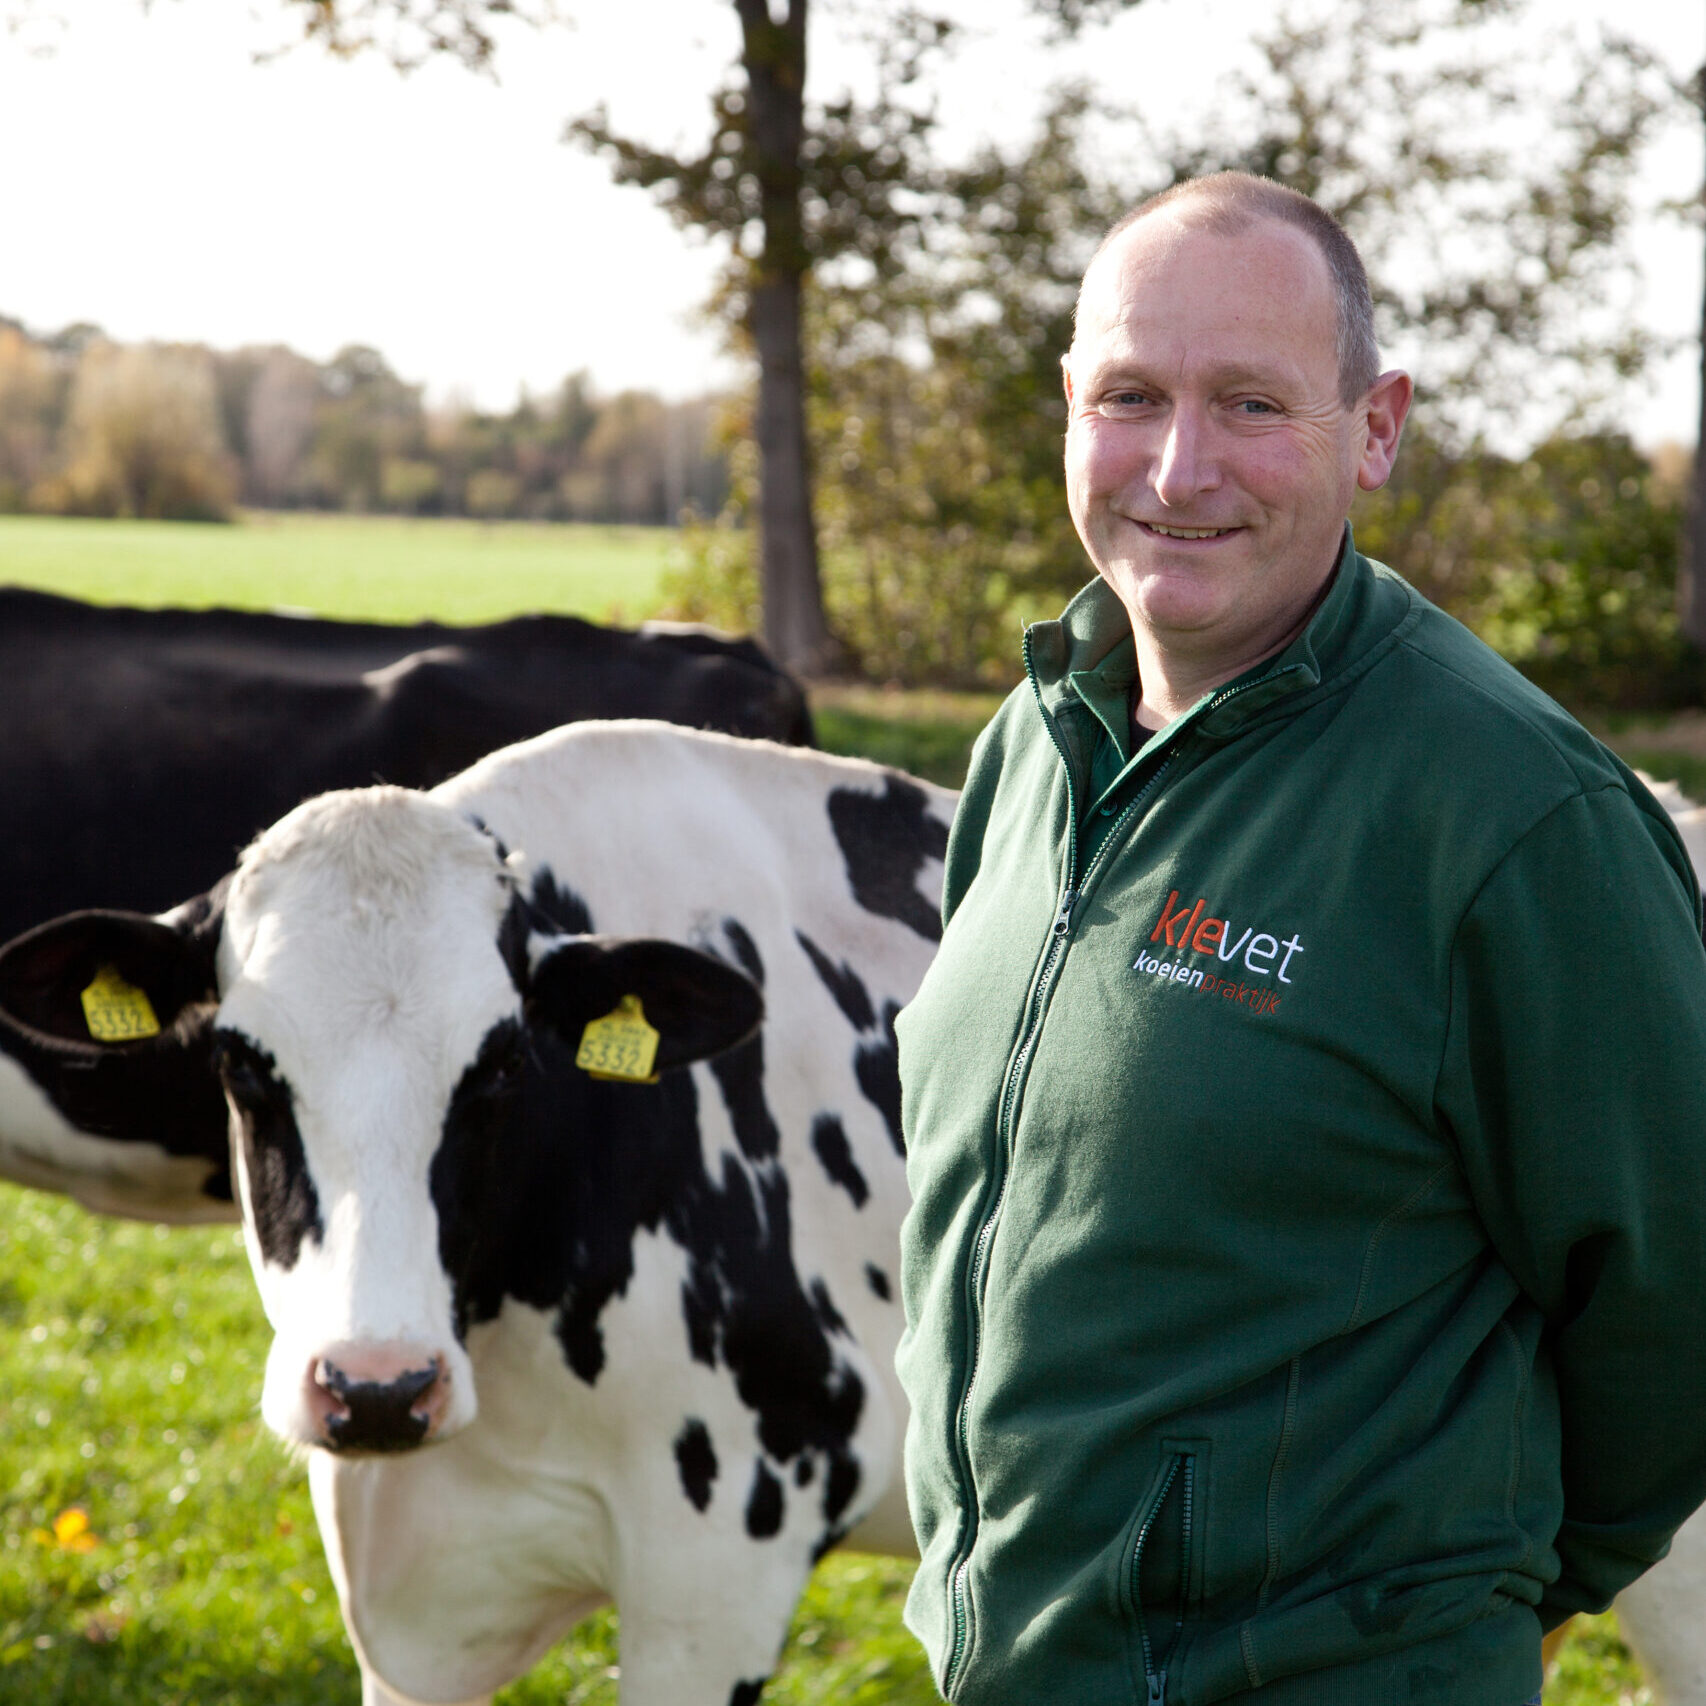 Mark van Kleef experienced bovine vet